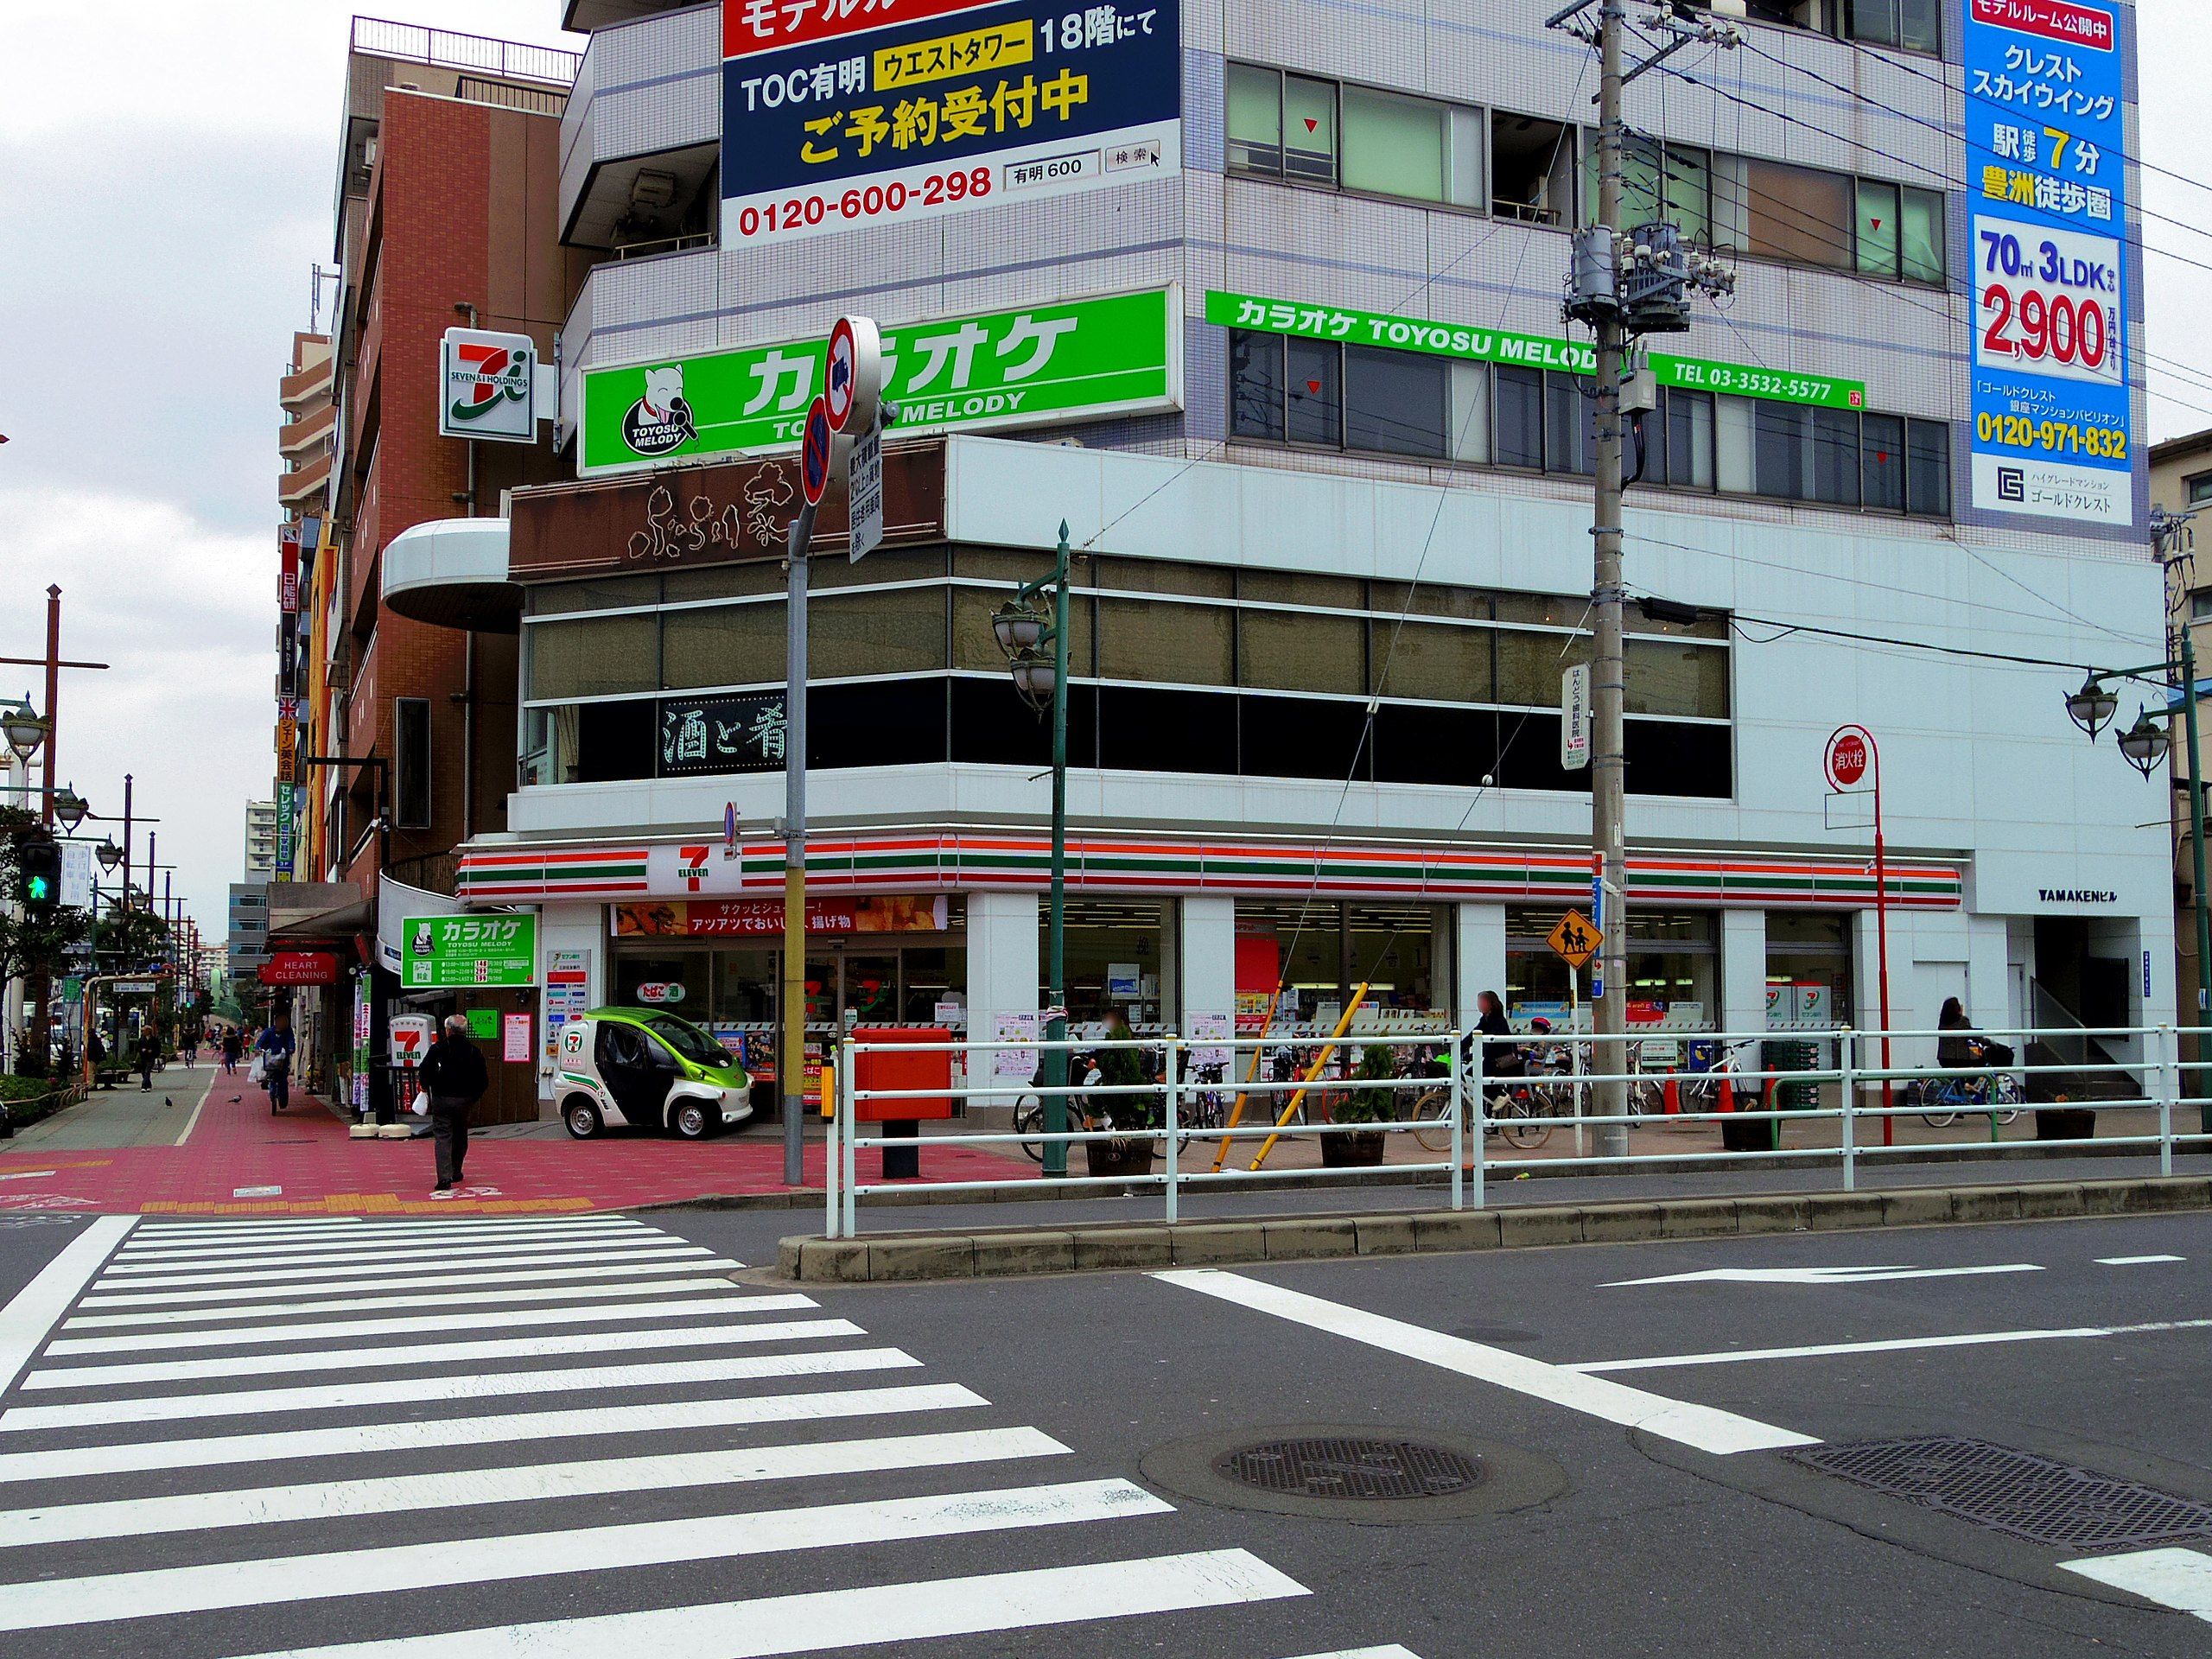 7-Eleven store Toyosu branch Tokyo Japan